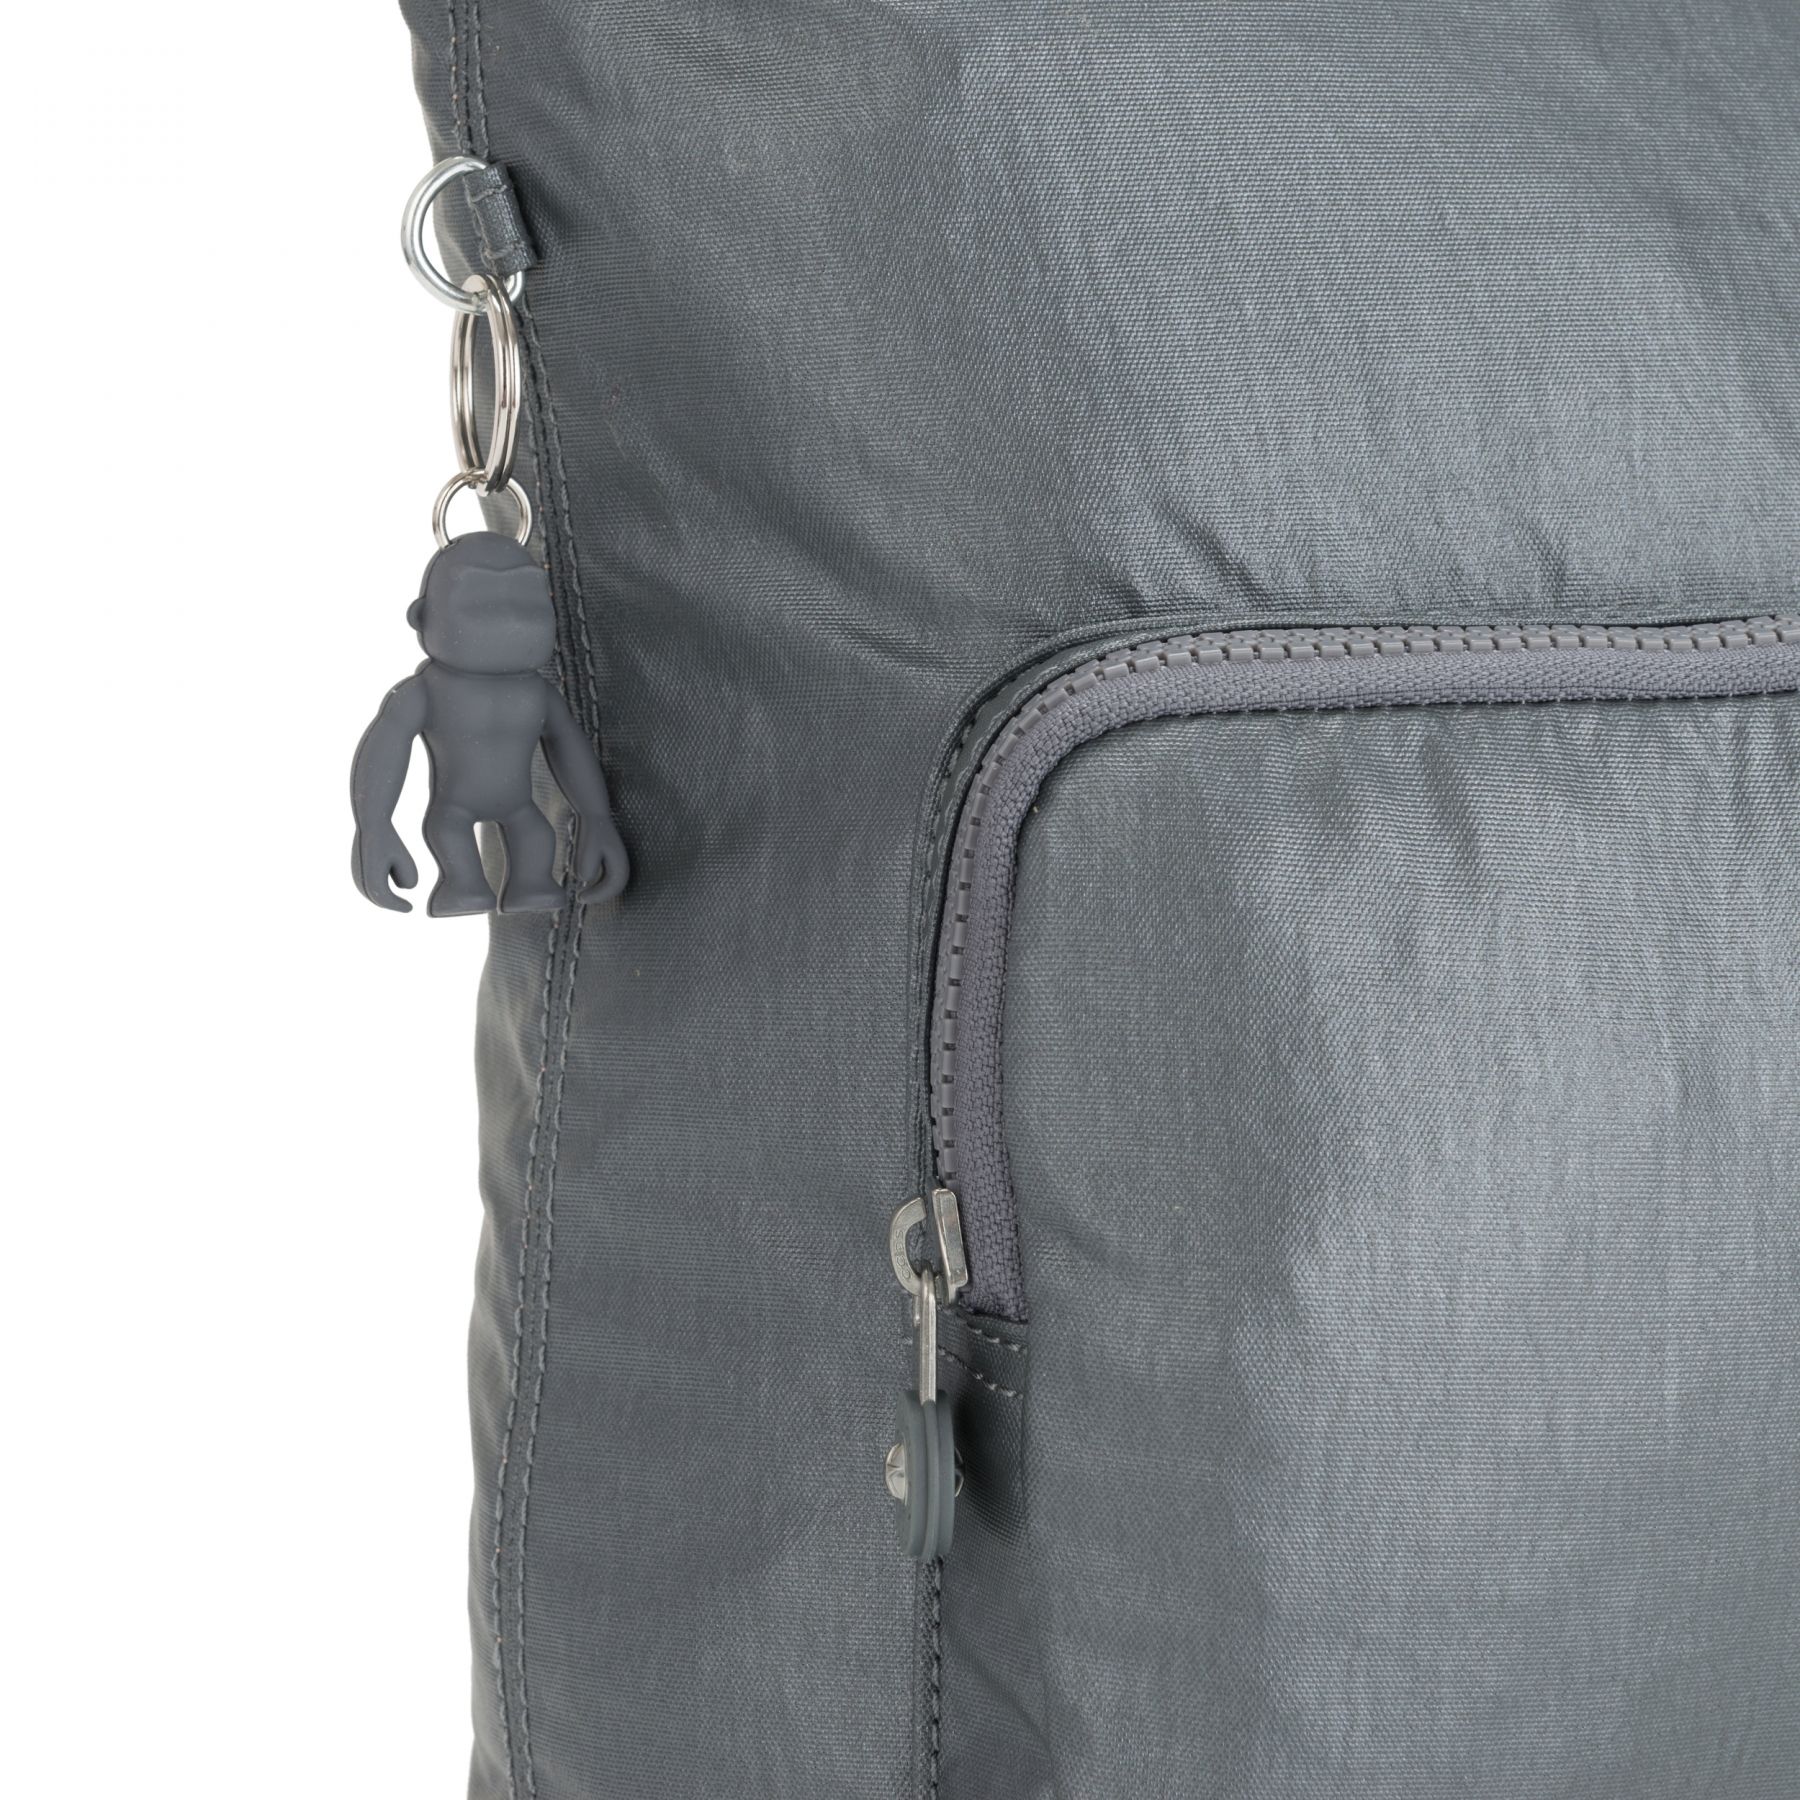 Kipling EIRENE Shoulderbag with External Front Pockets